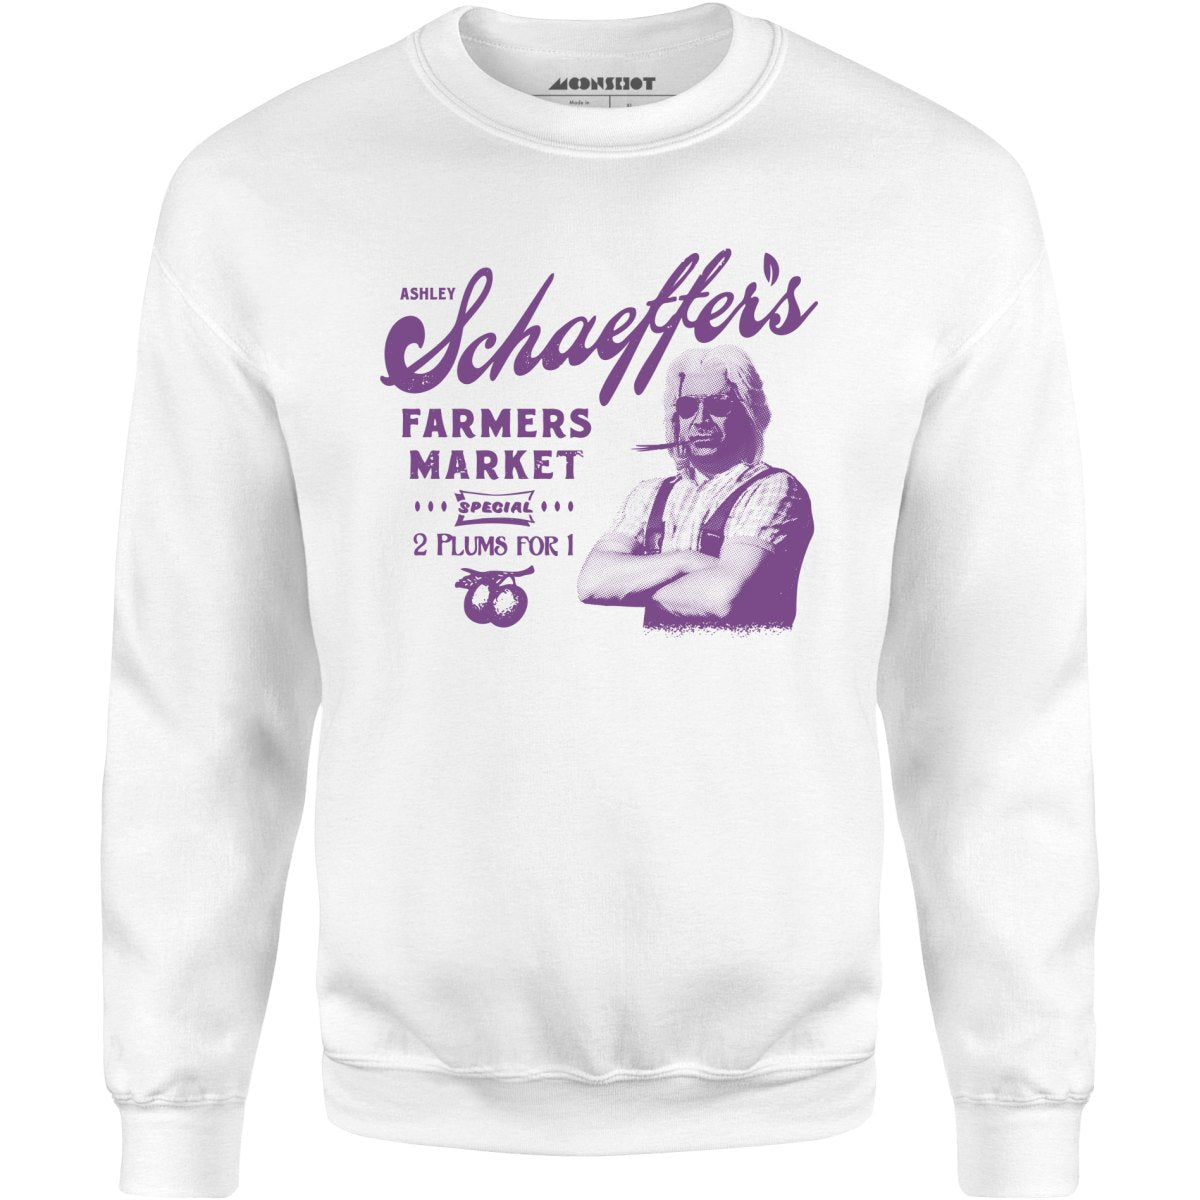 Ashley Schaeffer's Farmers Market - Unisex Sweatshirt